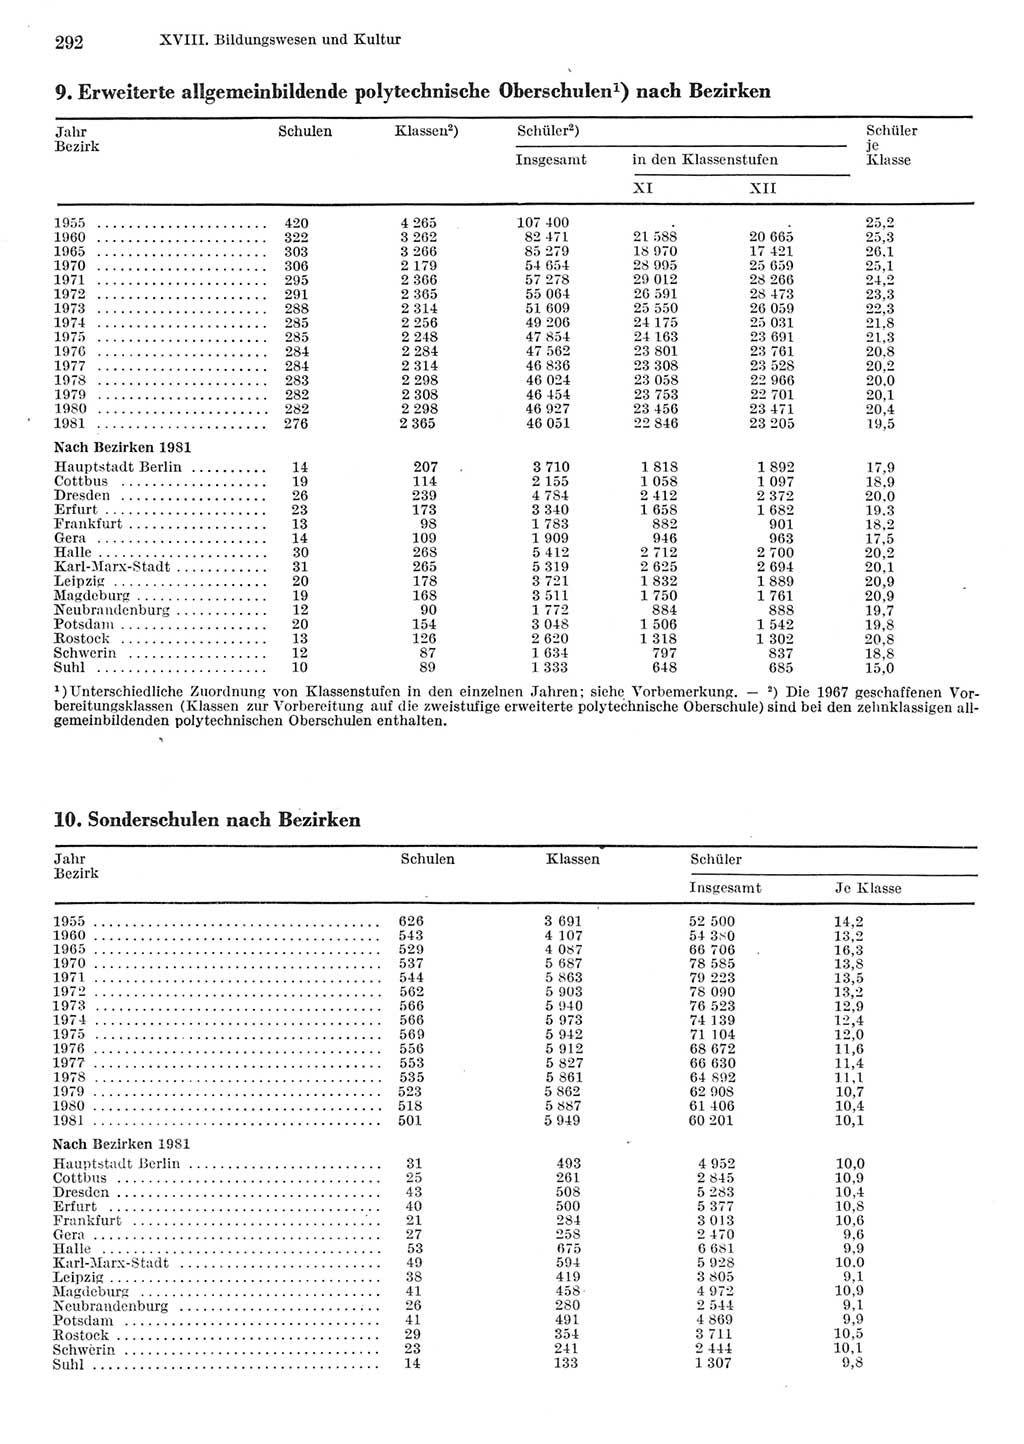 Statistisches Jahrbuch der Deutschen Demokratischen Republik (DDR) 1982, Seite 292 (Stat. Jb. DDR 1982, S. 292)